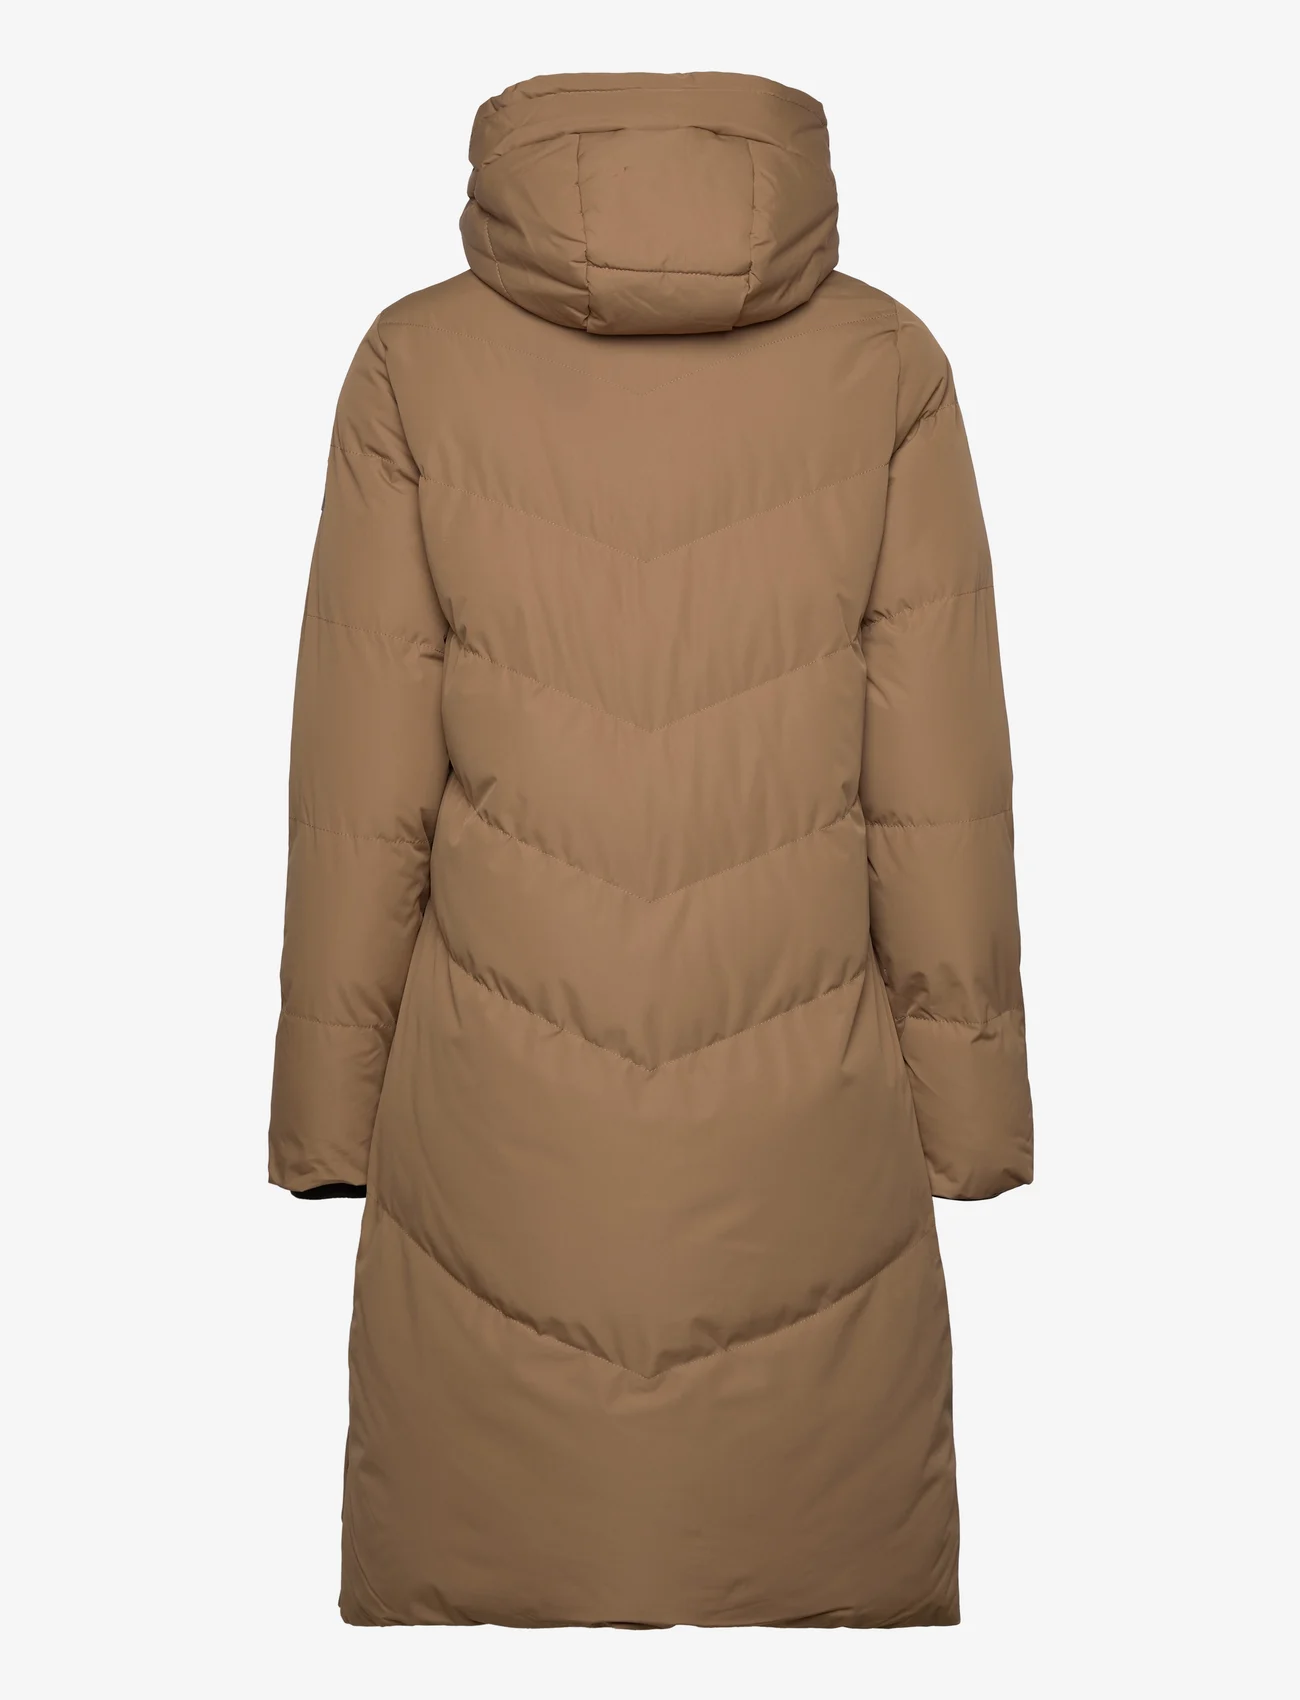 Garcia - ladies outdoor jackets - winterjacken - brown - 1